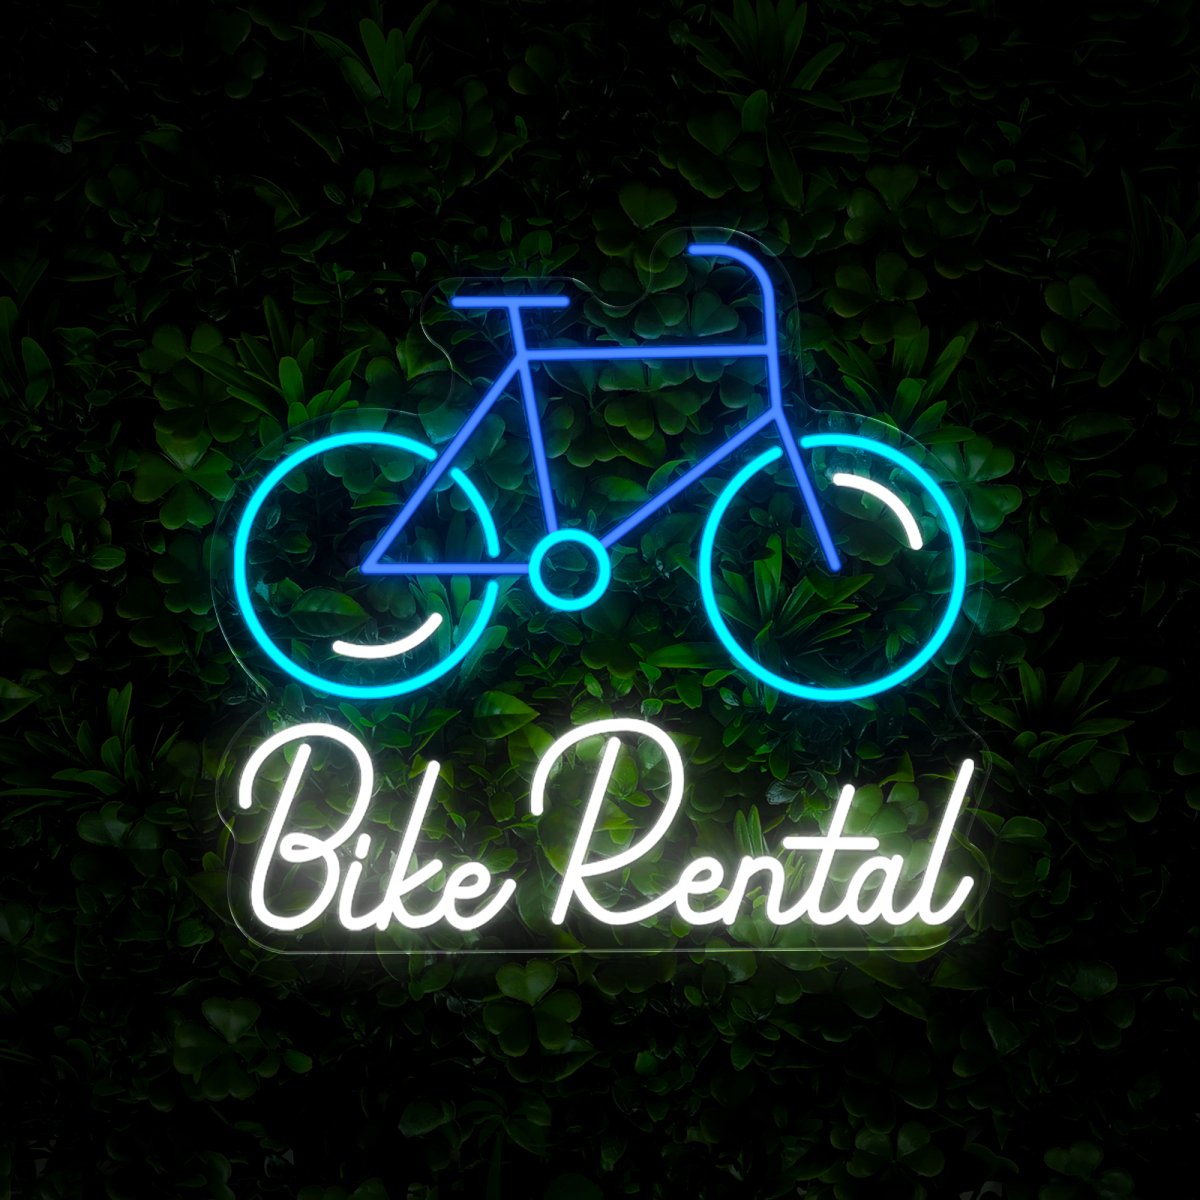 Bike Rental Neon Sign - Reels Custom